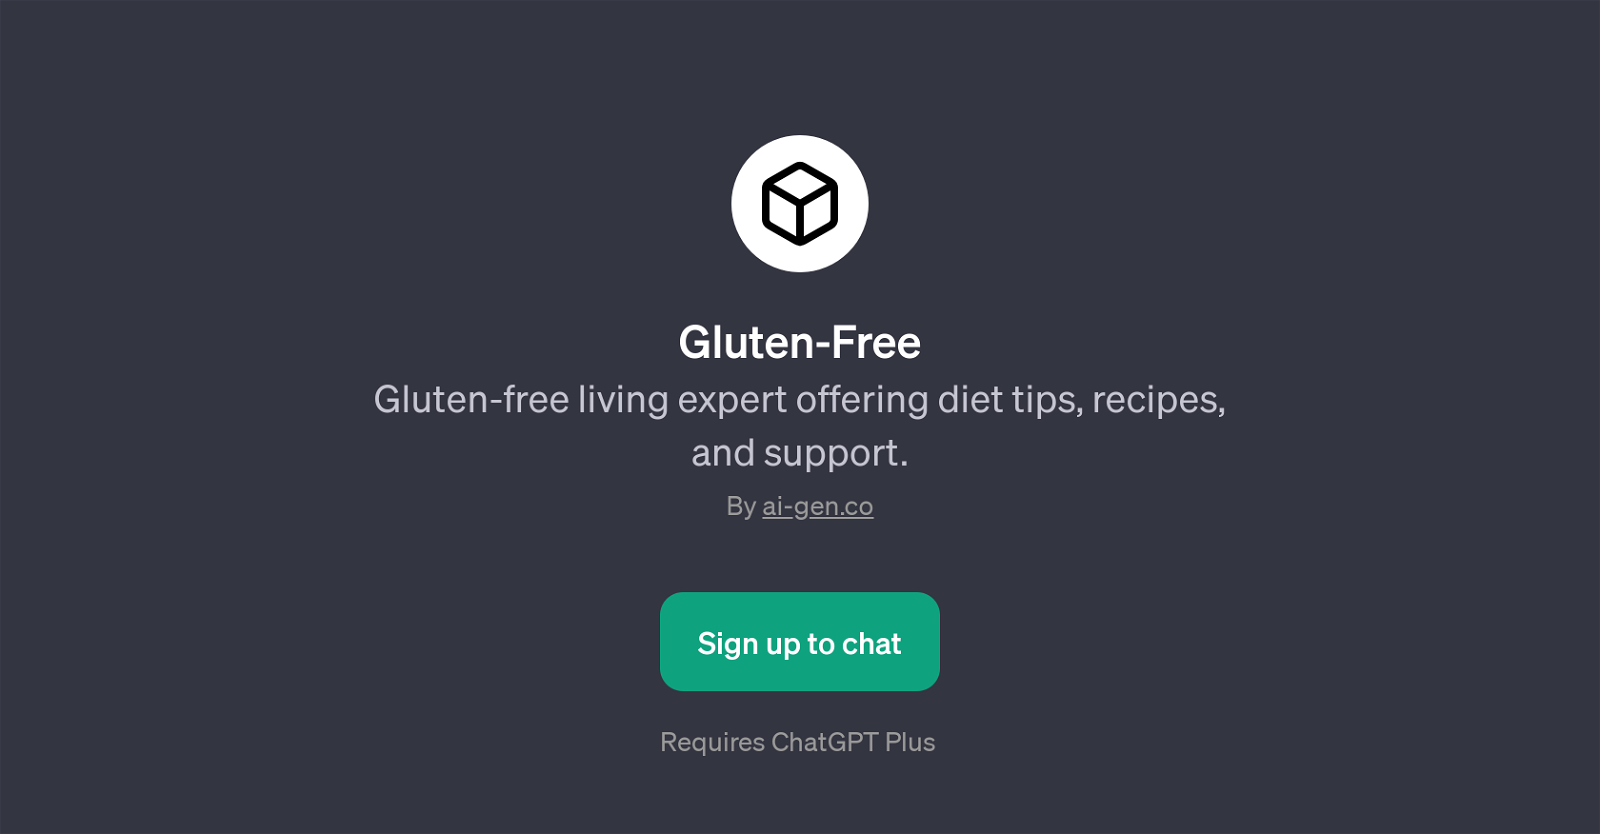 Gluten-Free website